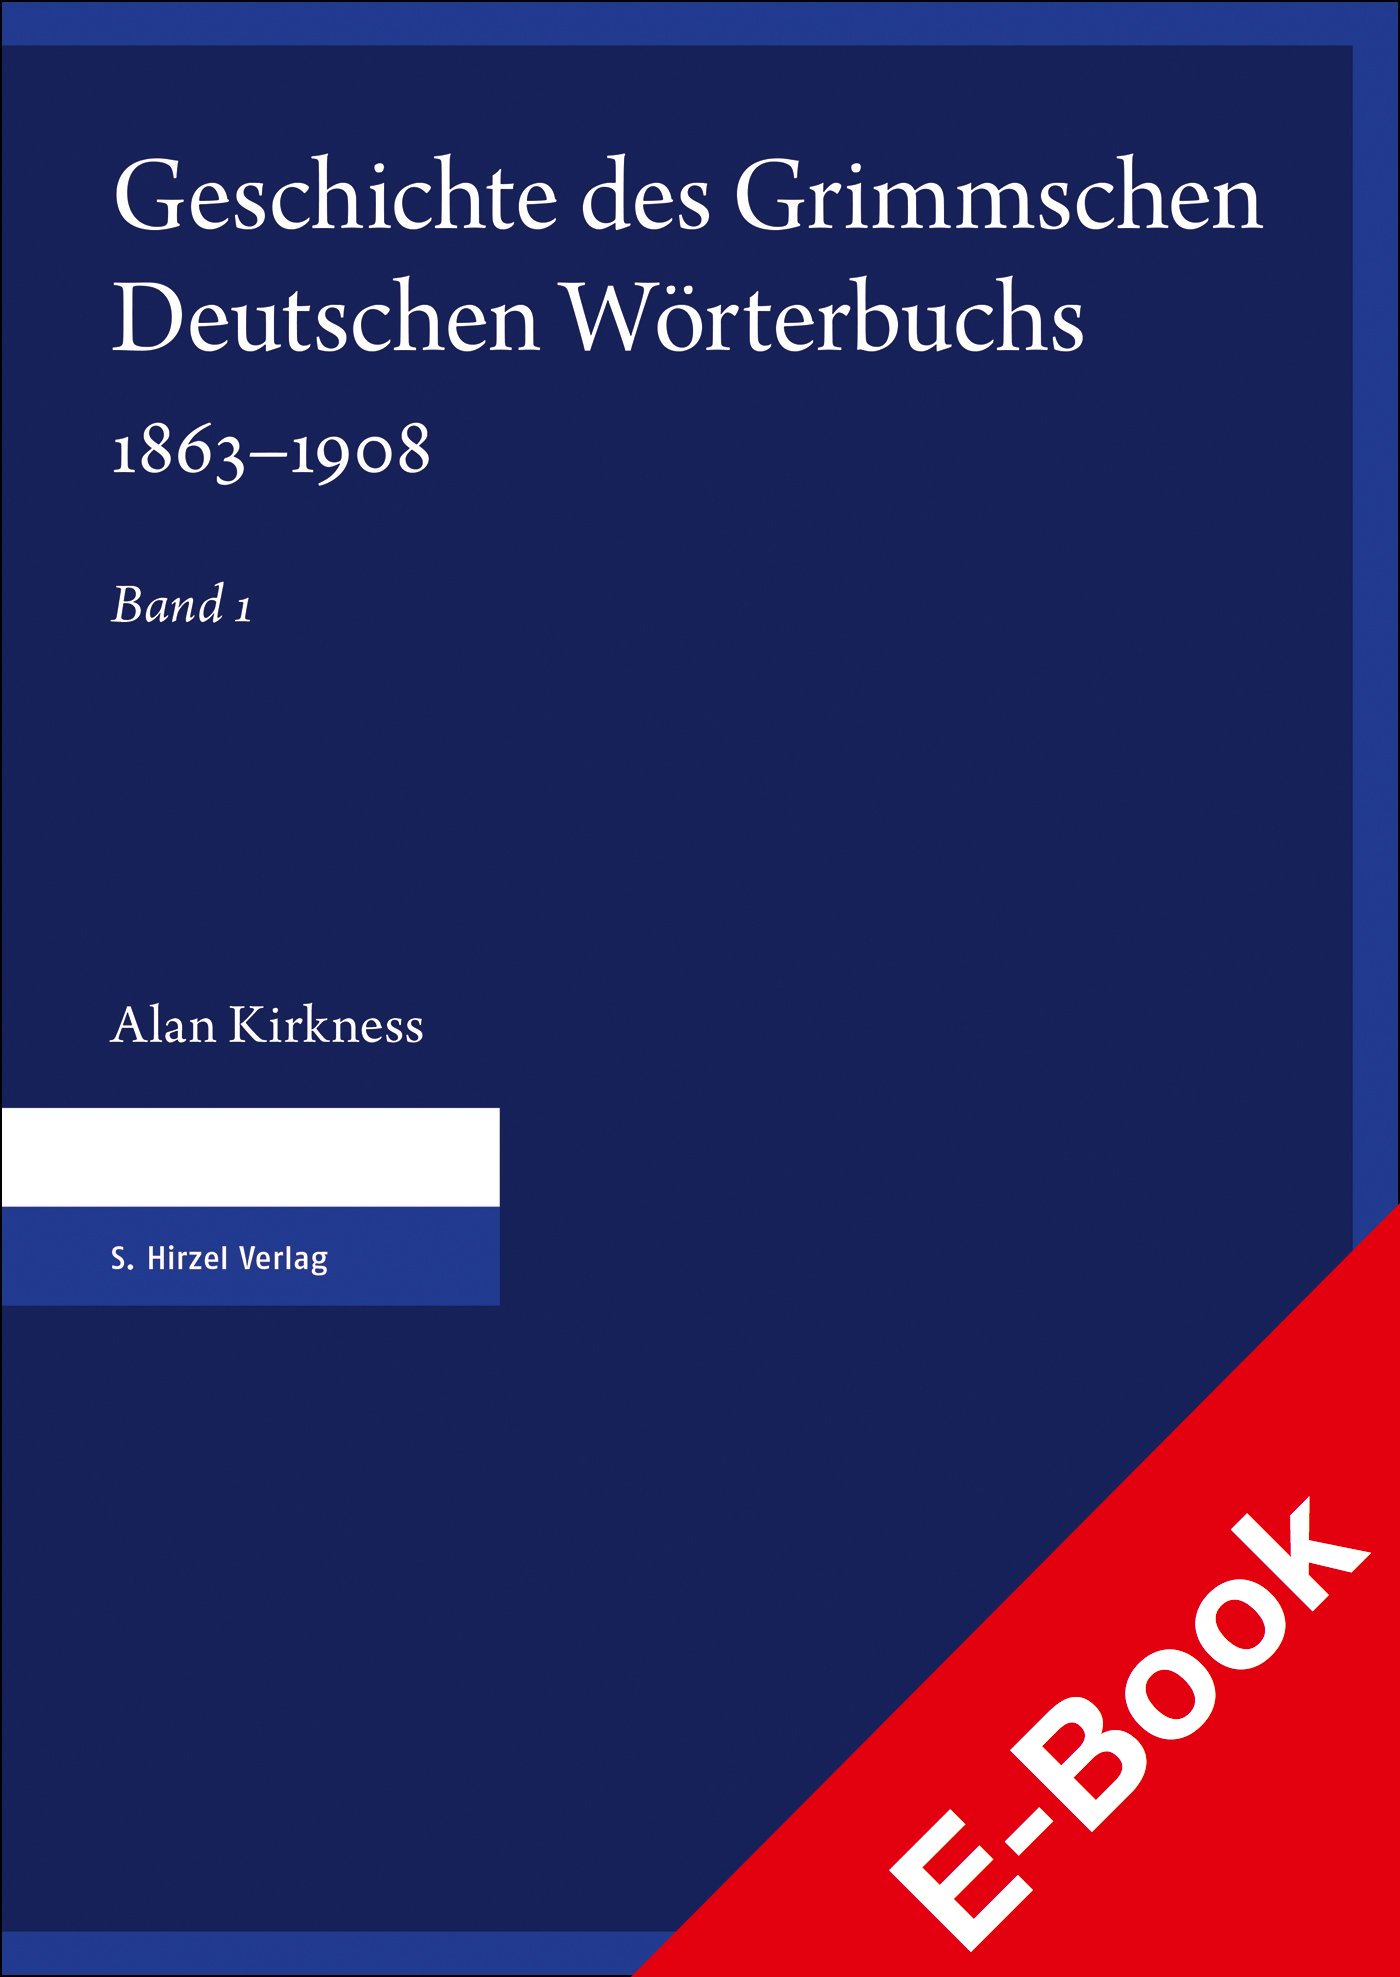 Geschichte des Grimmschen Deutschen Wörterbuchs 1863–1908. Teil 1 und 2

